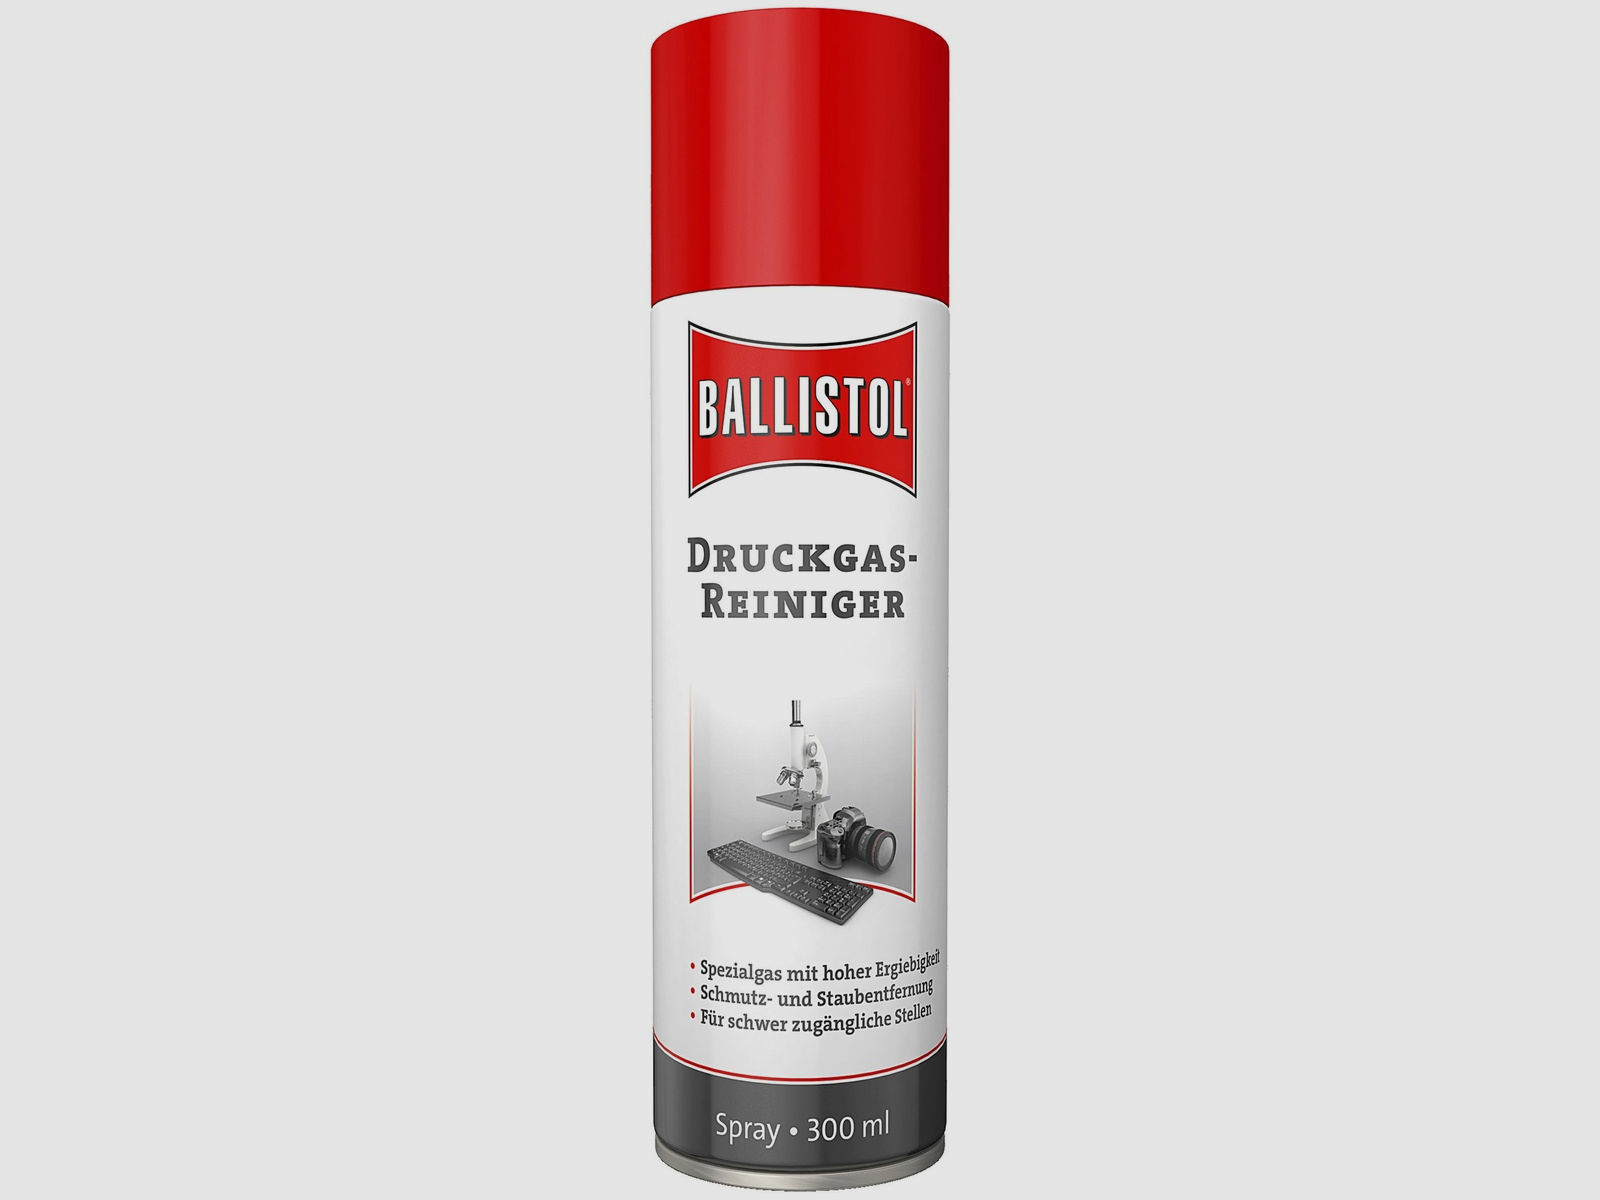 Ballistol Druckgas-Reiniger